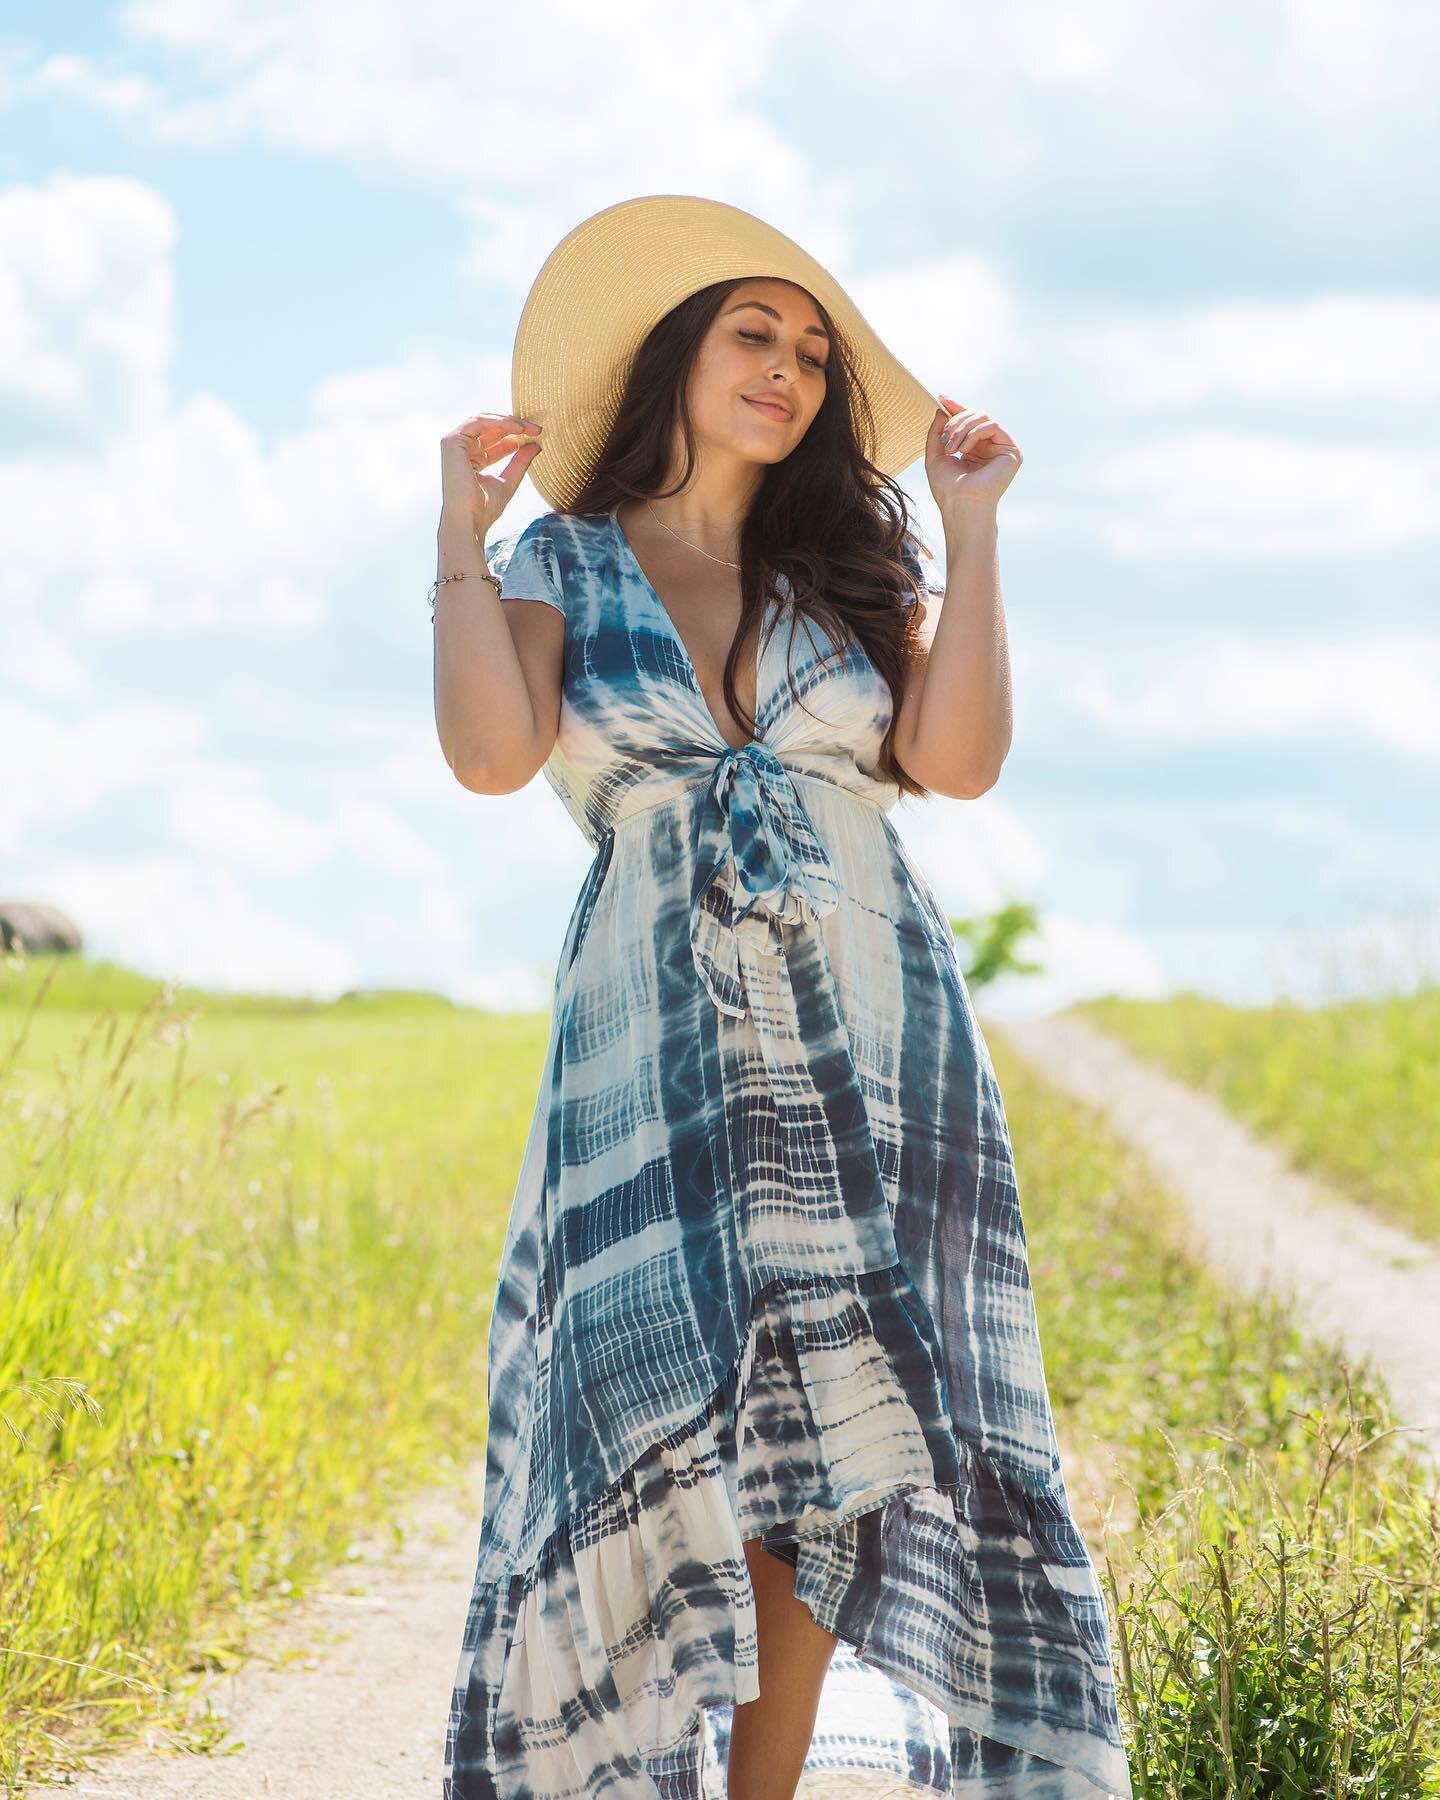 Sun hats &amp; summer dresses👒👗✨ My girly Julia looking like a summer dream!
.
.
.
.
.

#summervibes #summertime #summerphotoshoot #summer #summerphotography #torontophotography #torontophotographer #gtaphotography #toronto #caledon #caledonphotogr